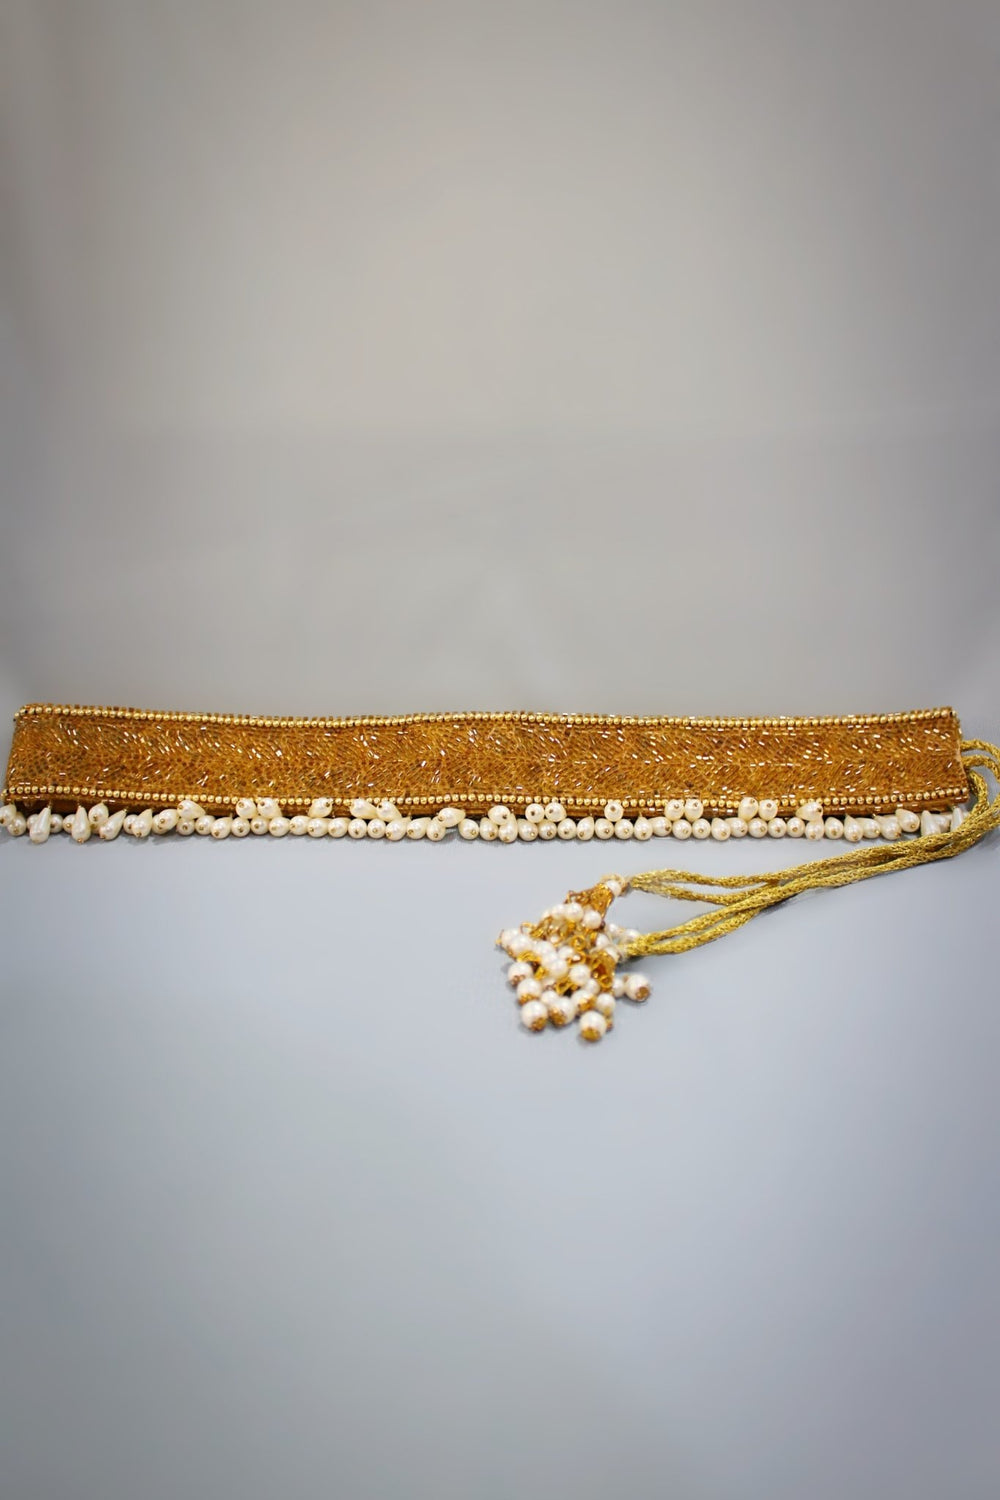 golden belt for saree - golden waist belt for saree - gold waist belt for saree